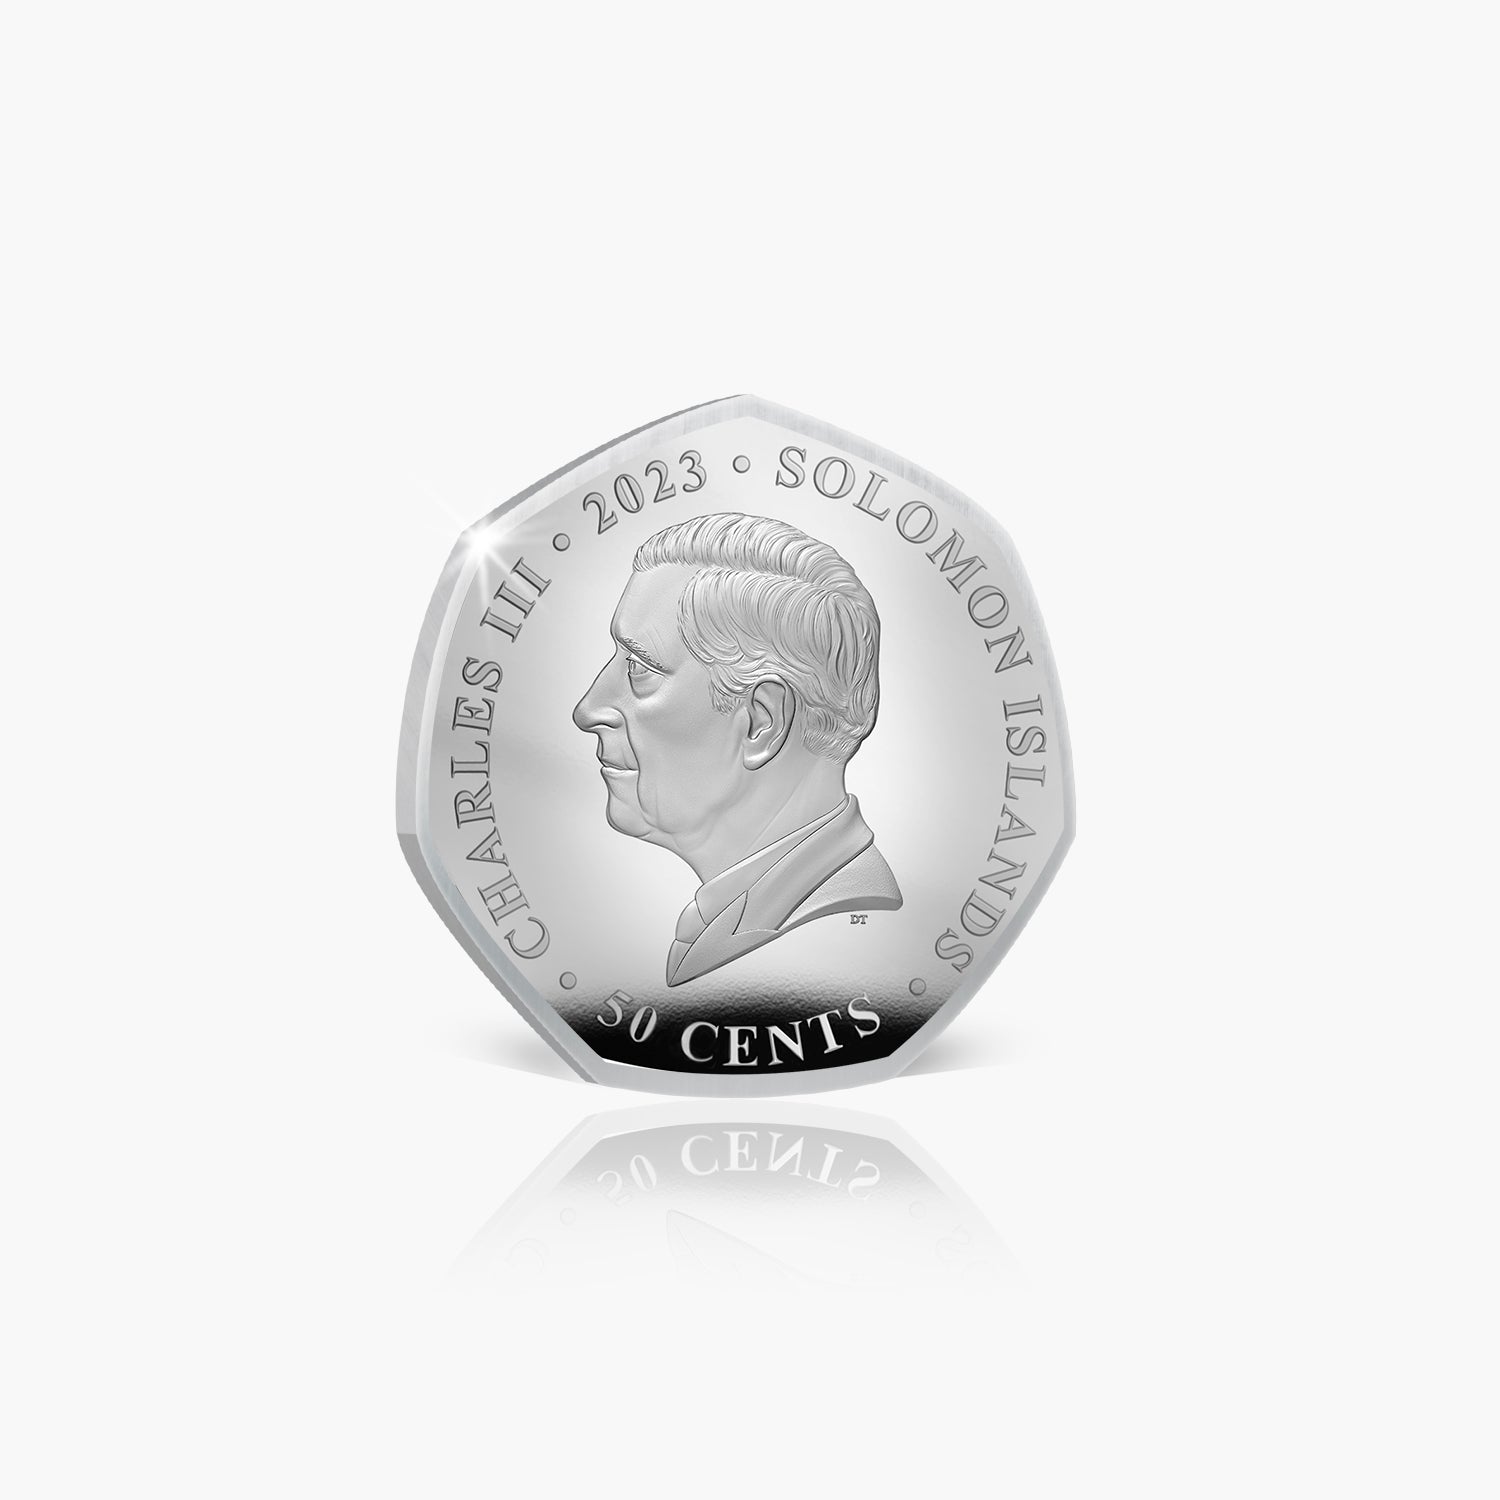 ピーターラビットの世界 2023 コインコレクション - ティミー ウィリー コイン